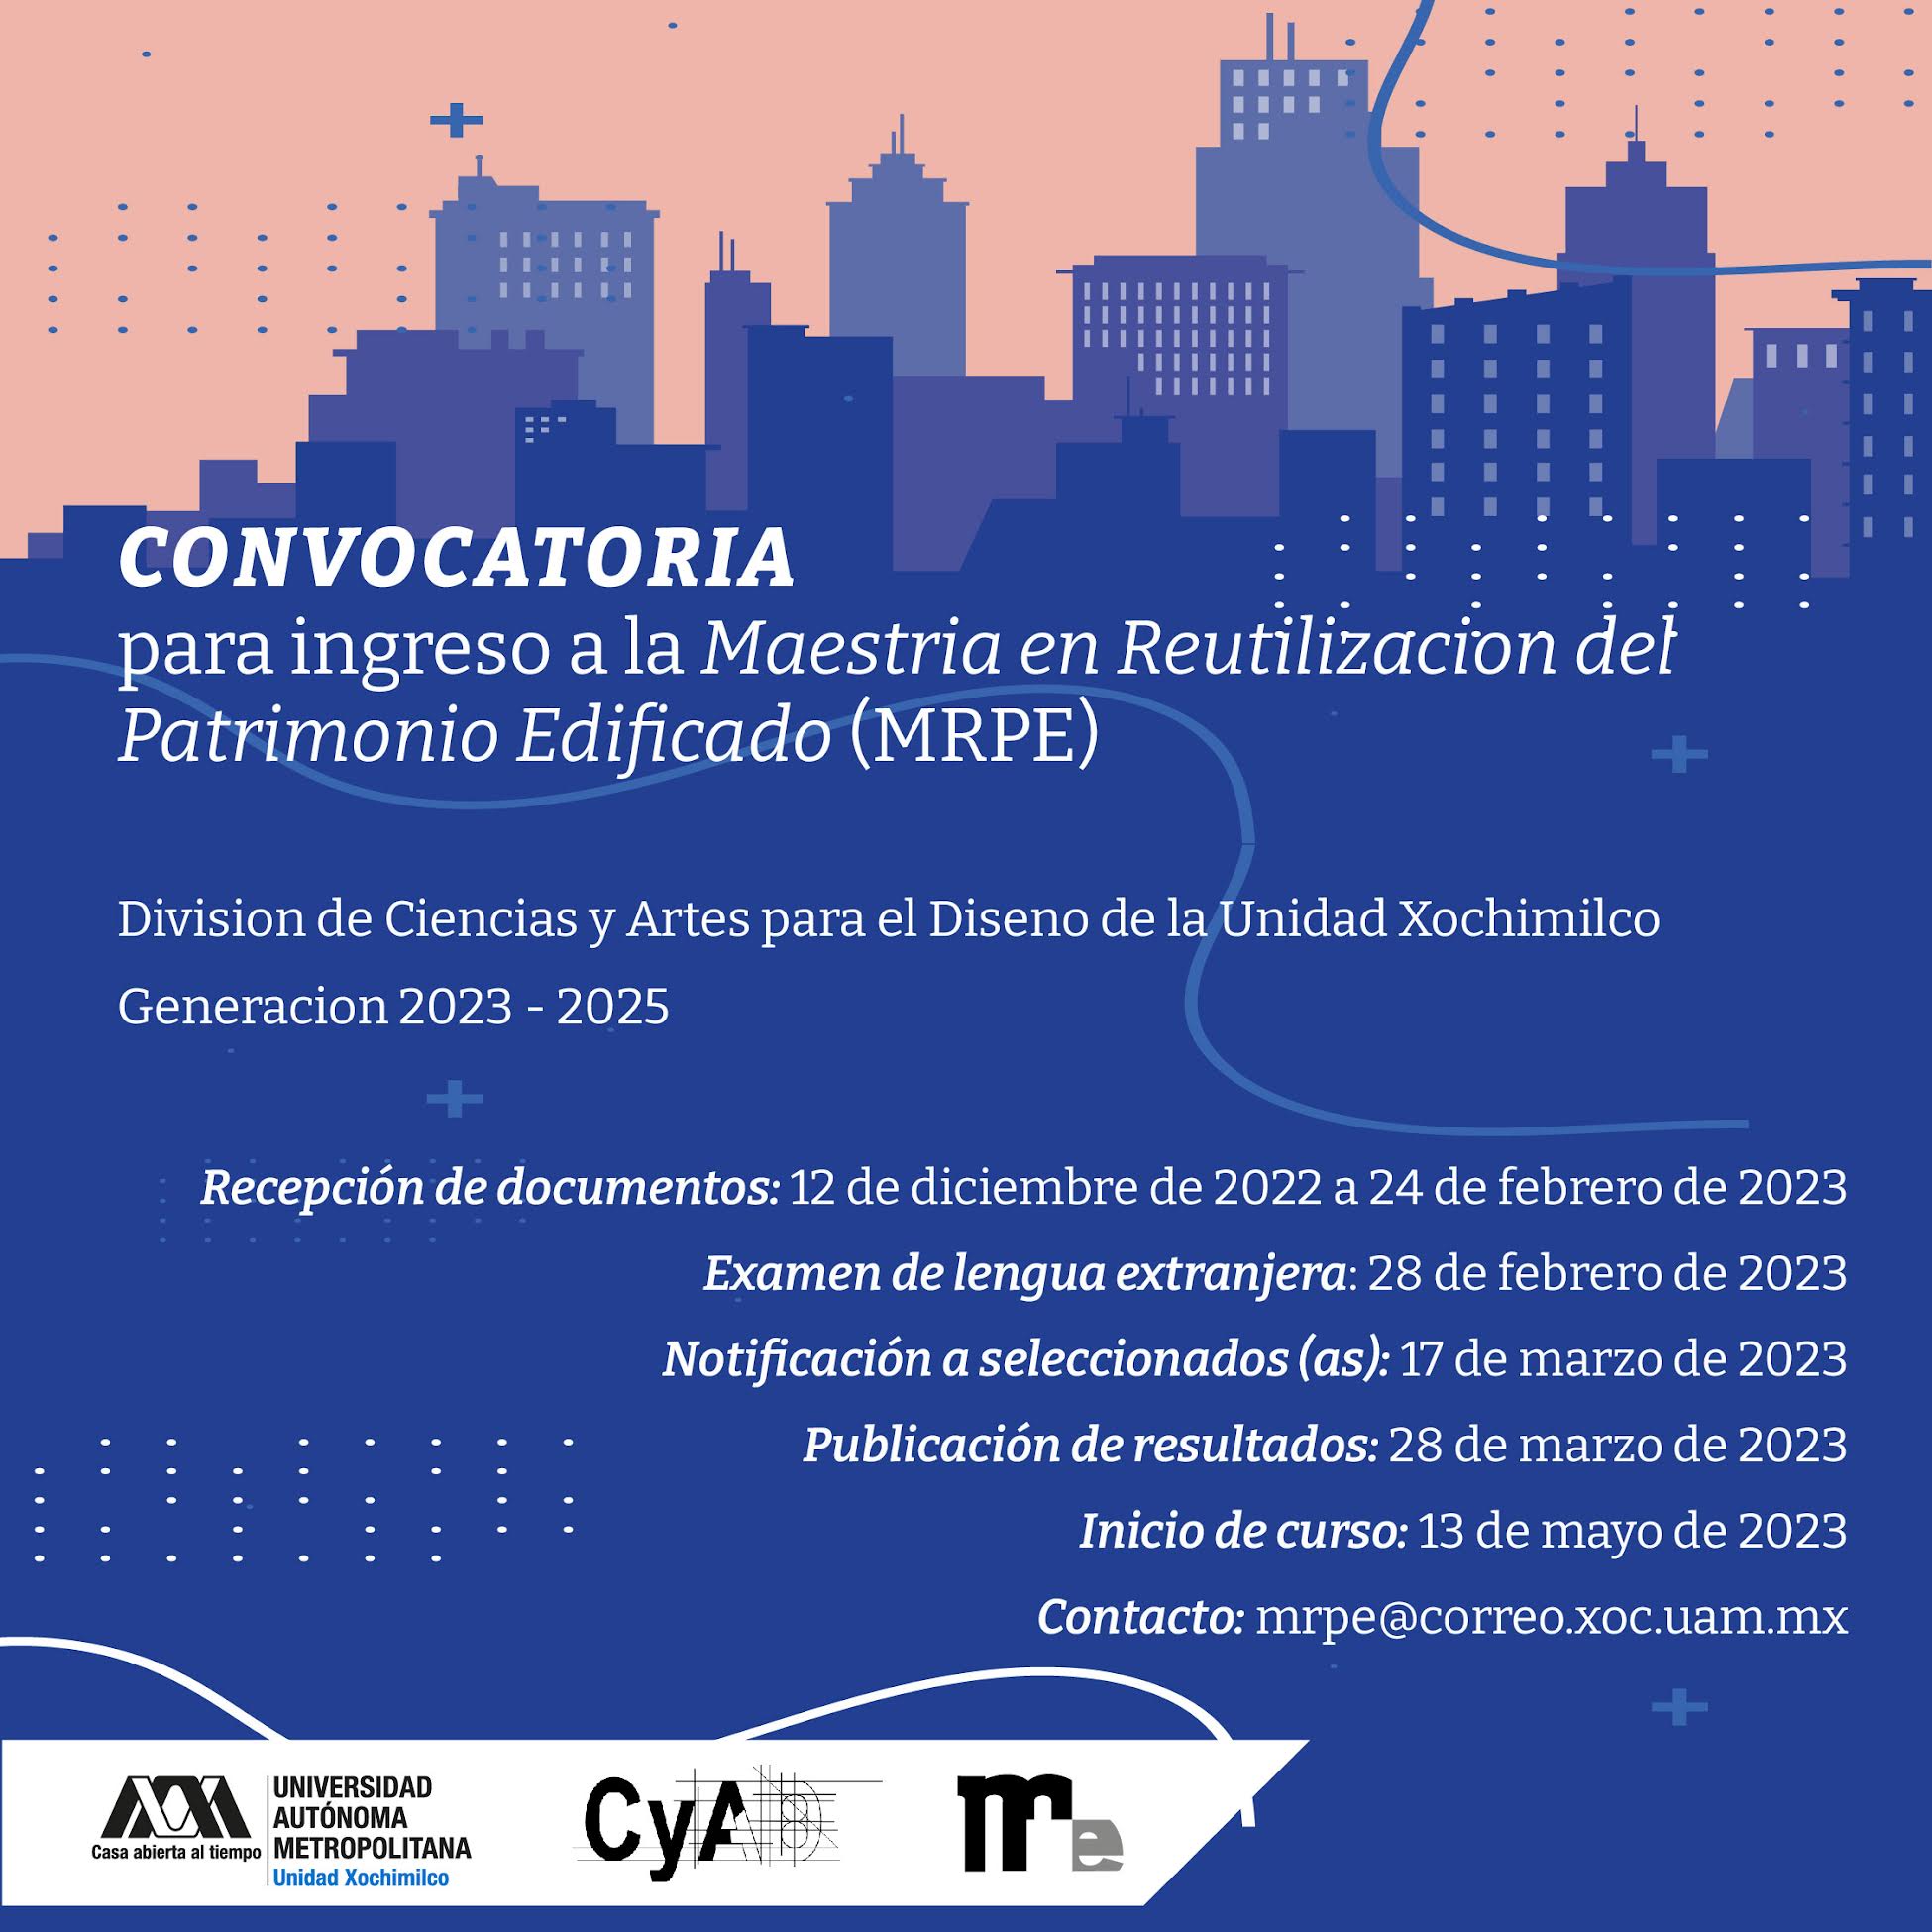 Convocatoria para ingreso a la Maestría en Reutilización del Patrimonio Edificado (MRPE) División de Ciencias y Artes para el Diseño de la Unidad Xochimilco Generación 2023 2025